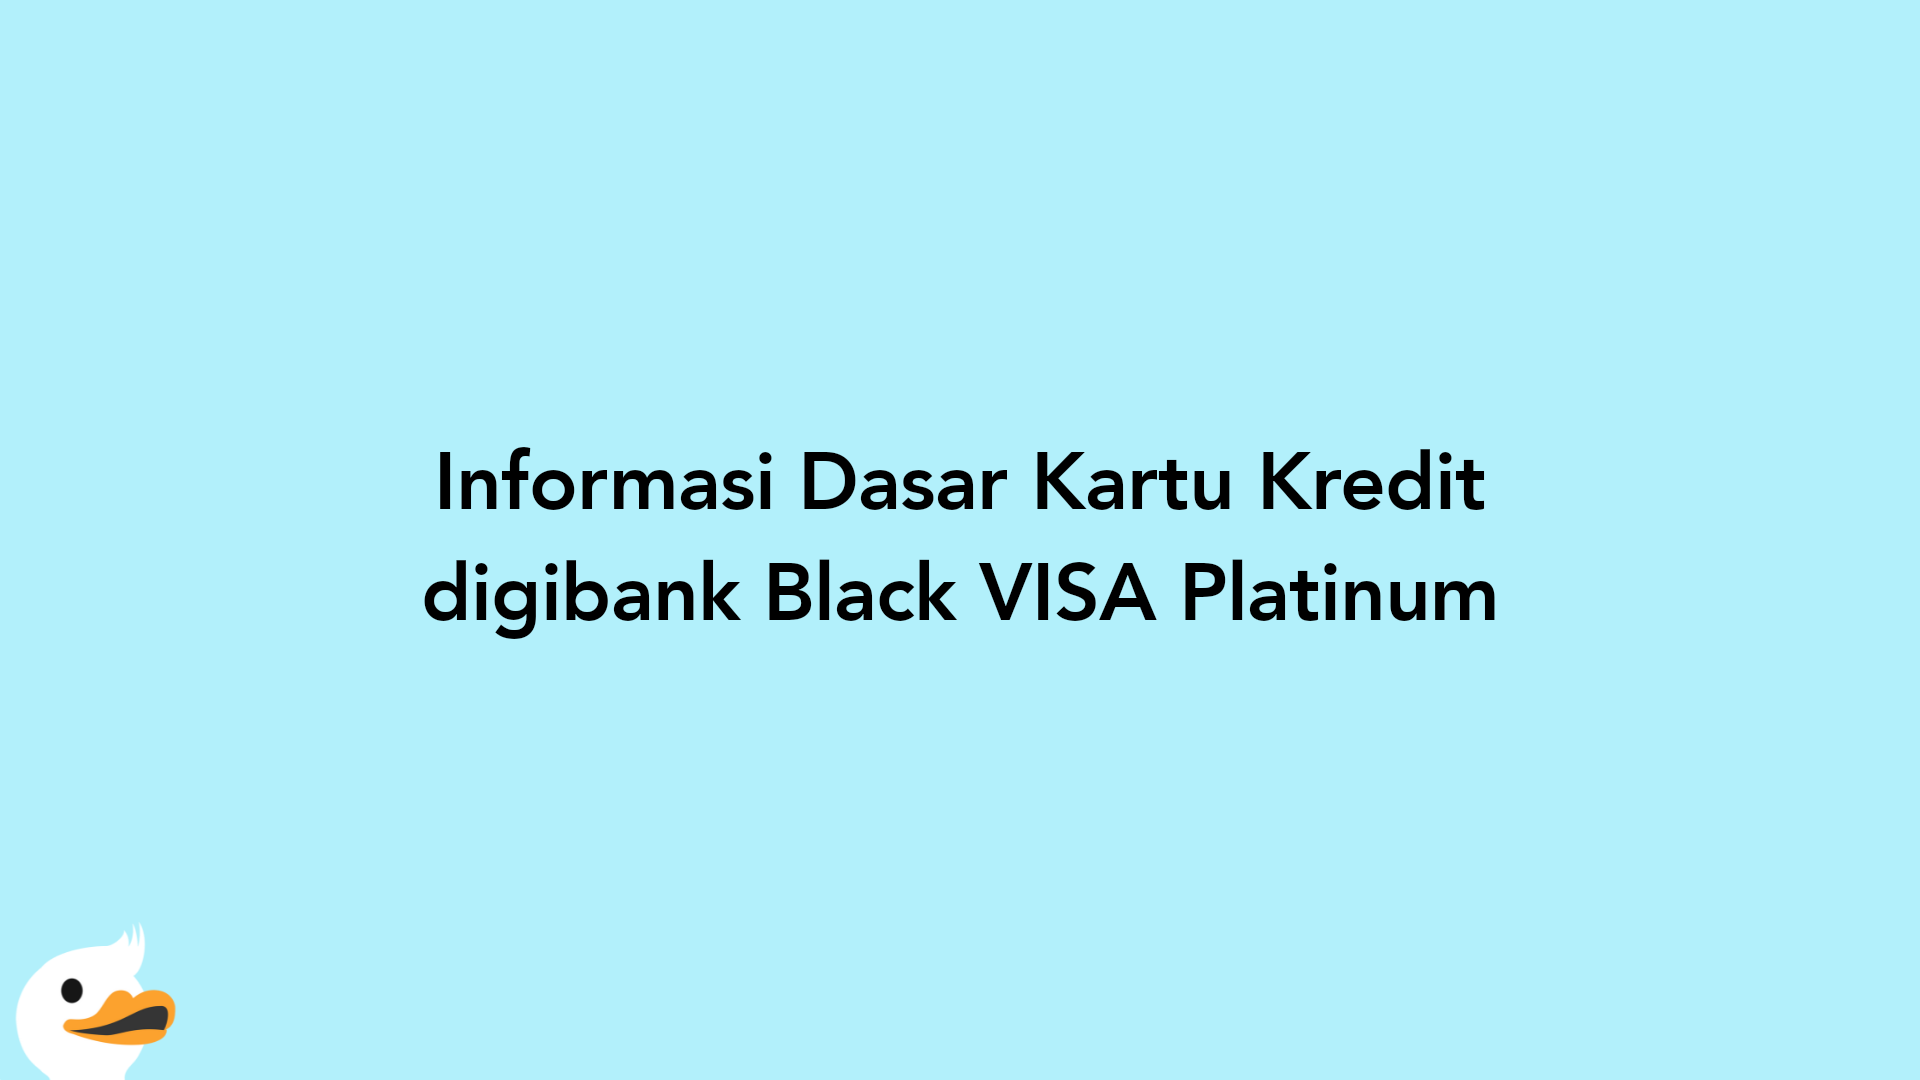 Informasi Dasar Kartu Kredit digibank Black VISA Platinum